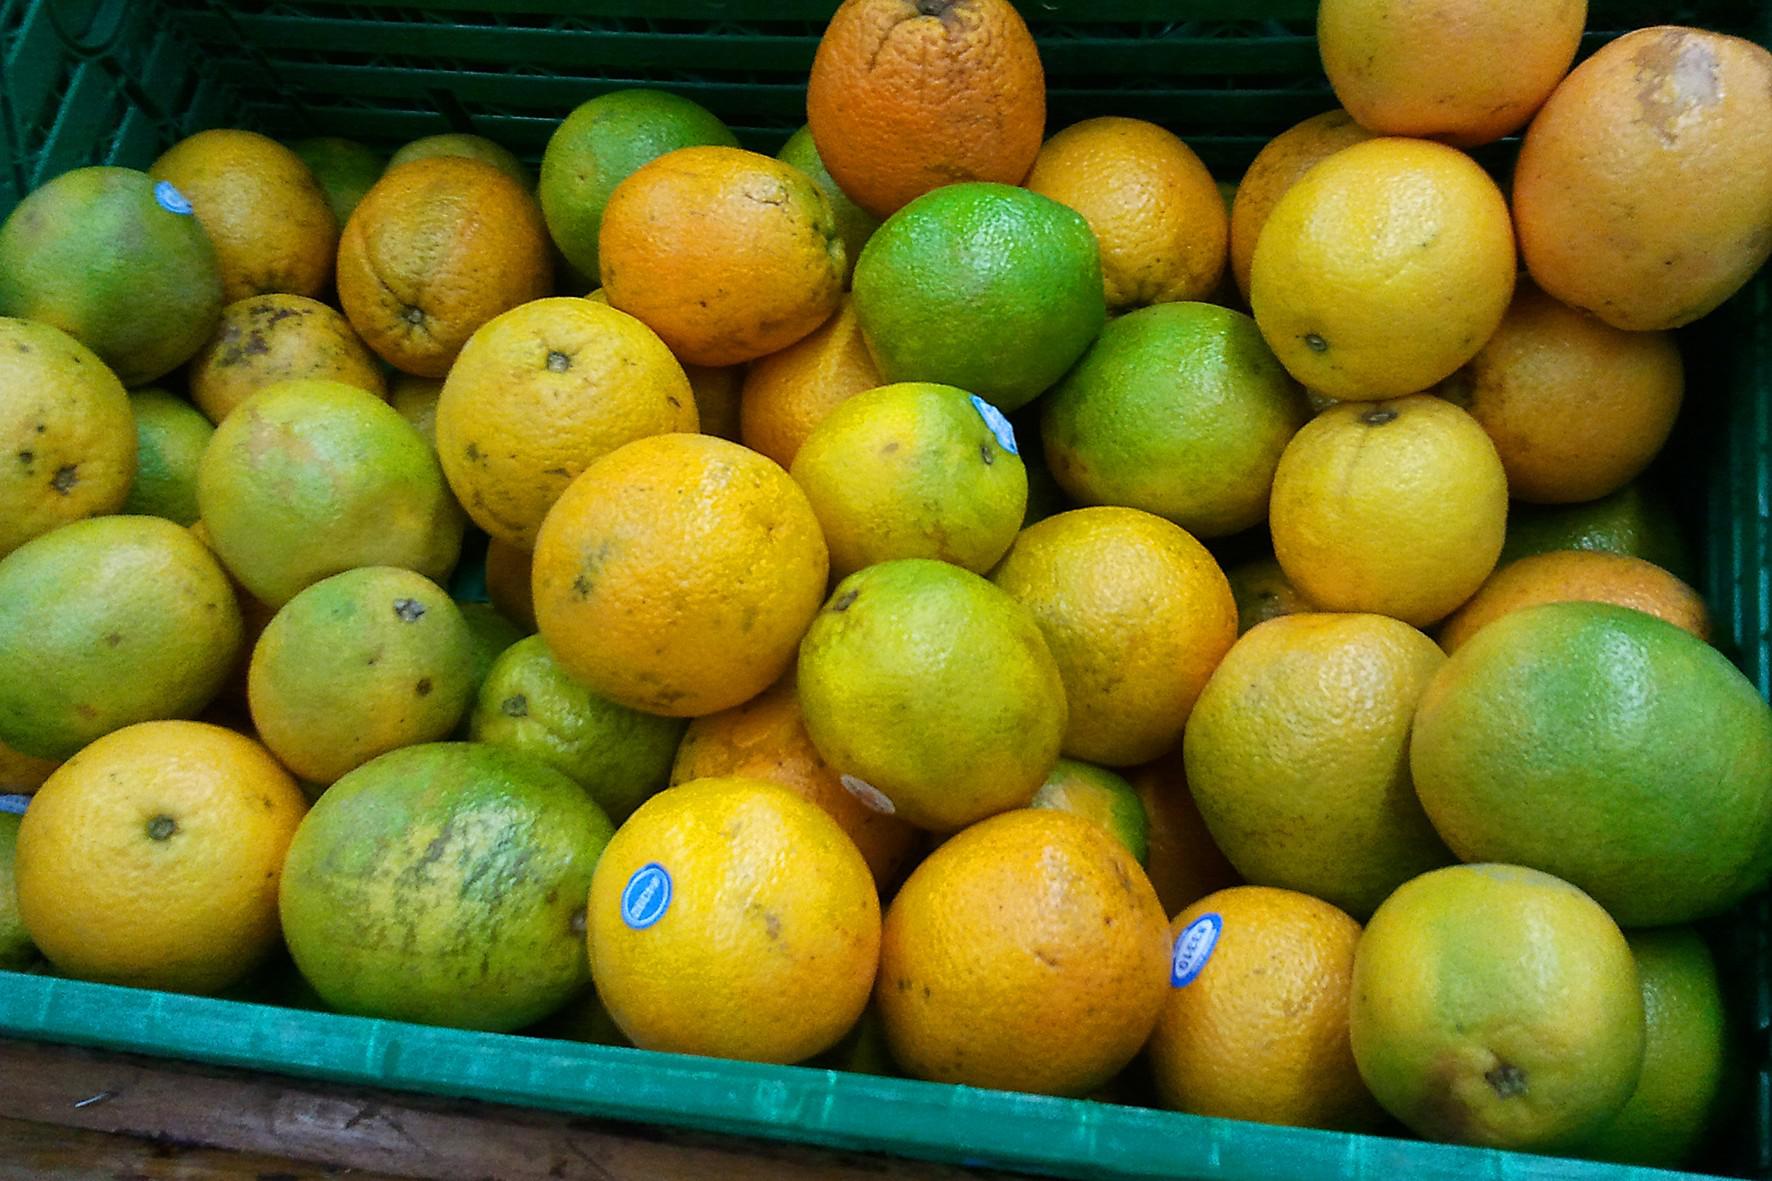 laranja frutas